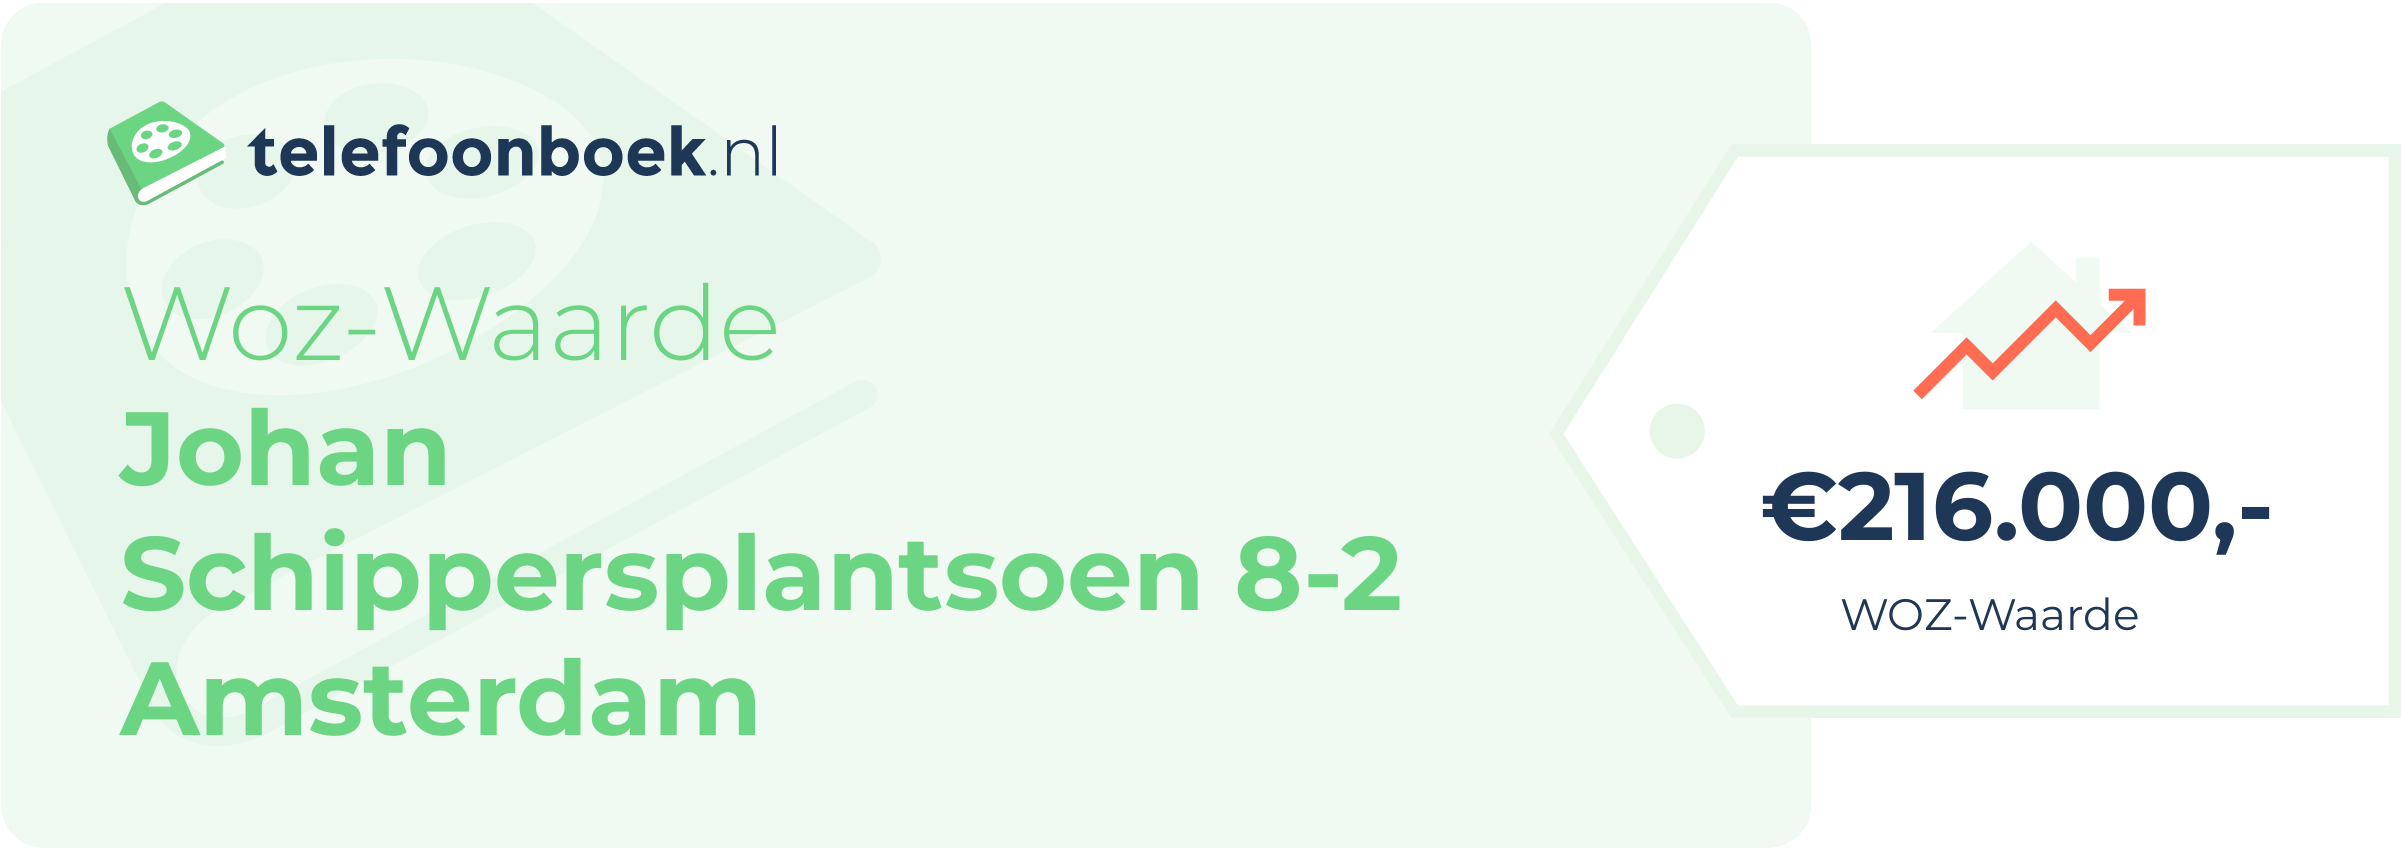 WOZ-waarde Johan Schippersplantsoen 8-2 Amsterdam